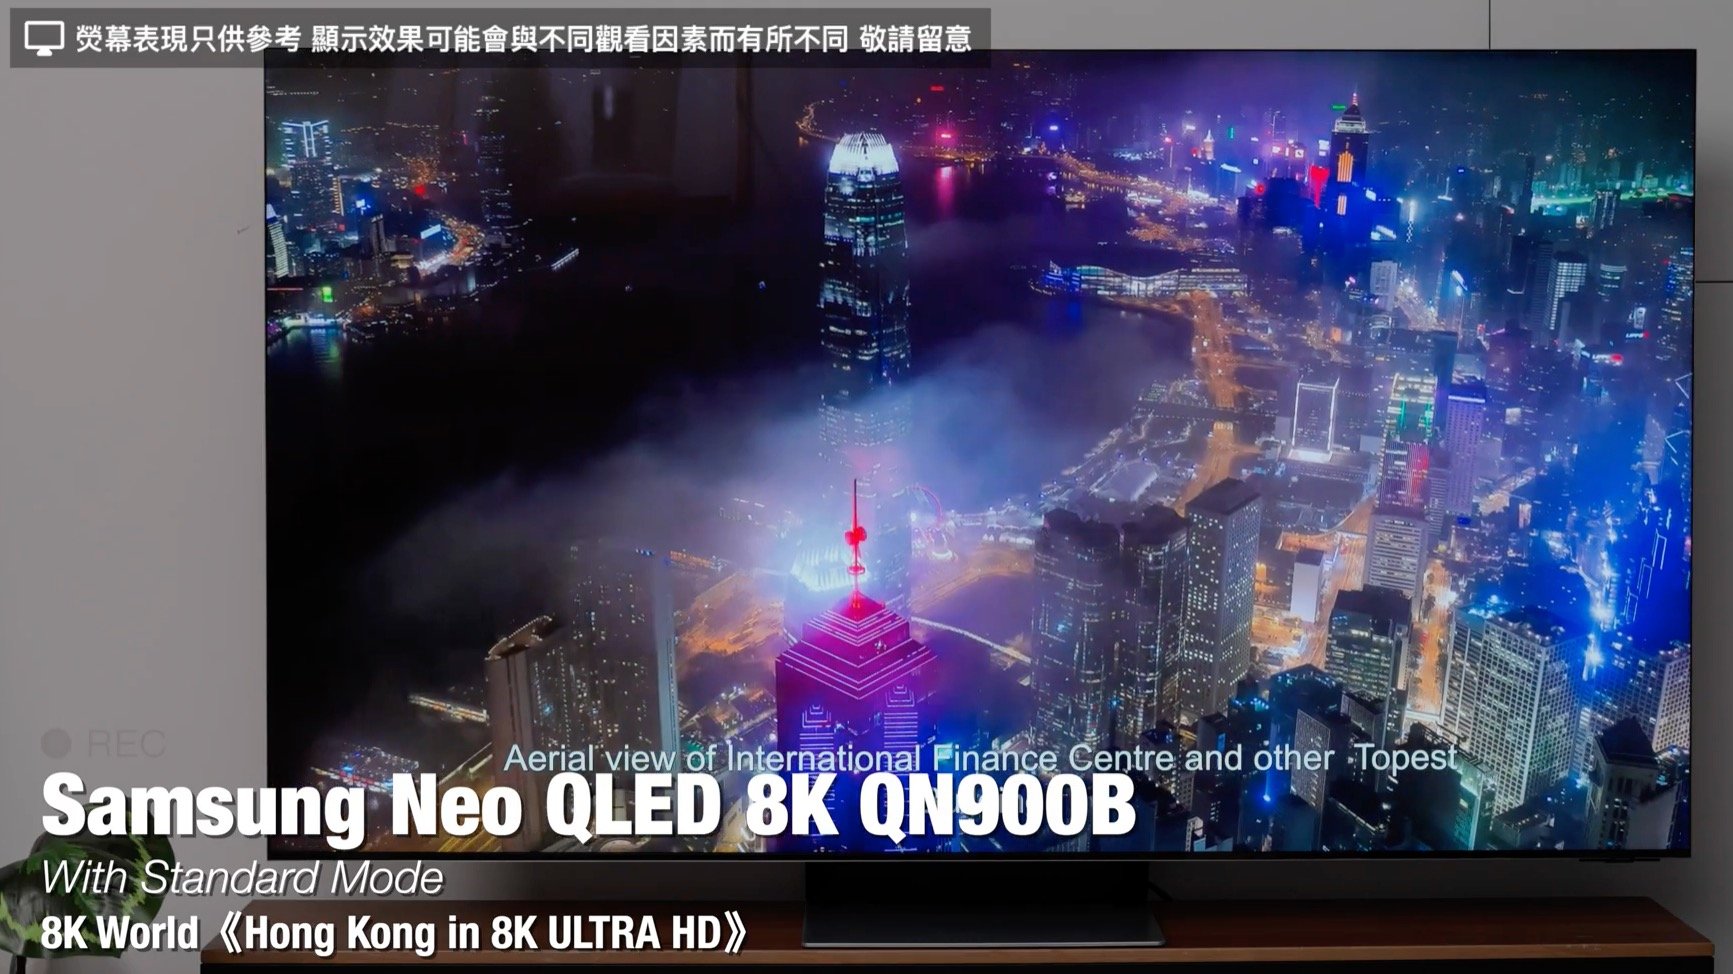 Samsung Neo QLED QN900B